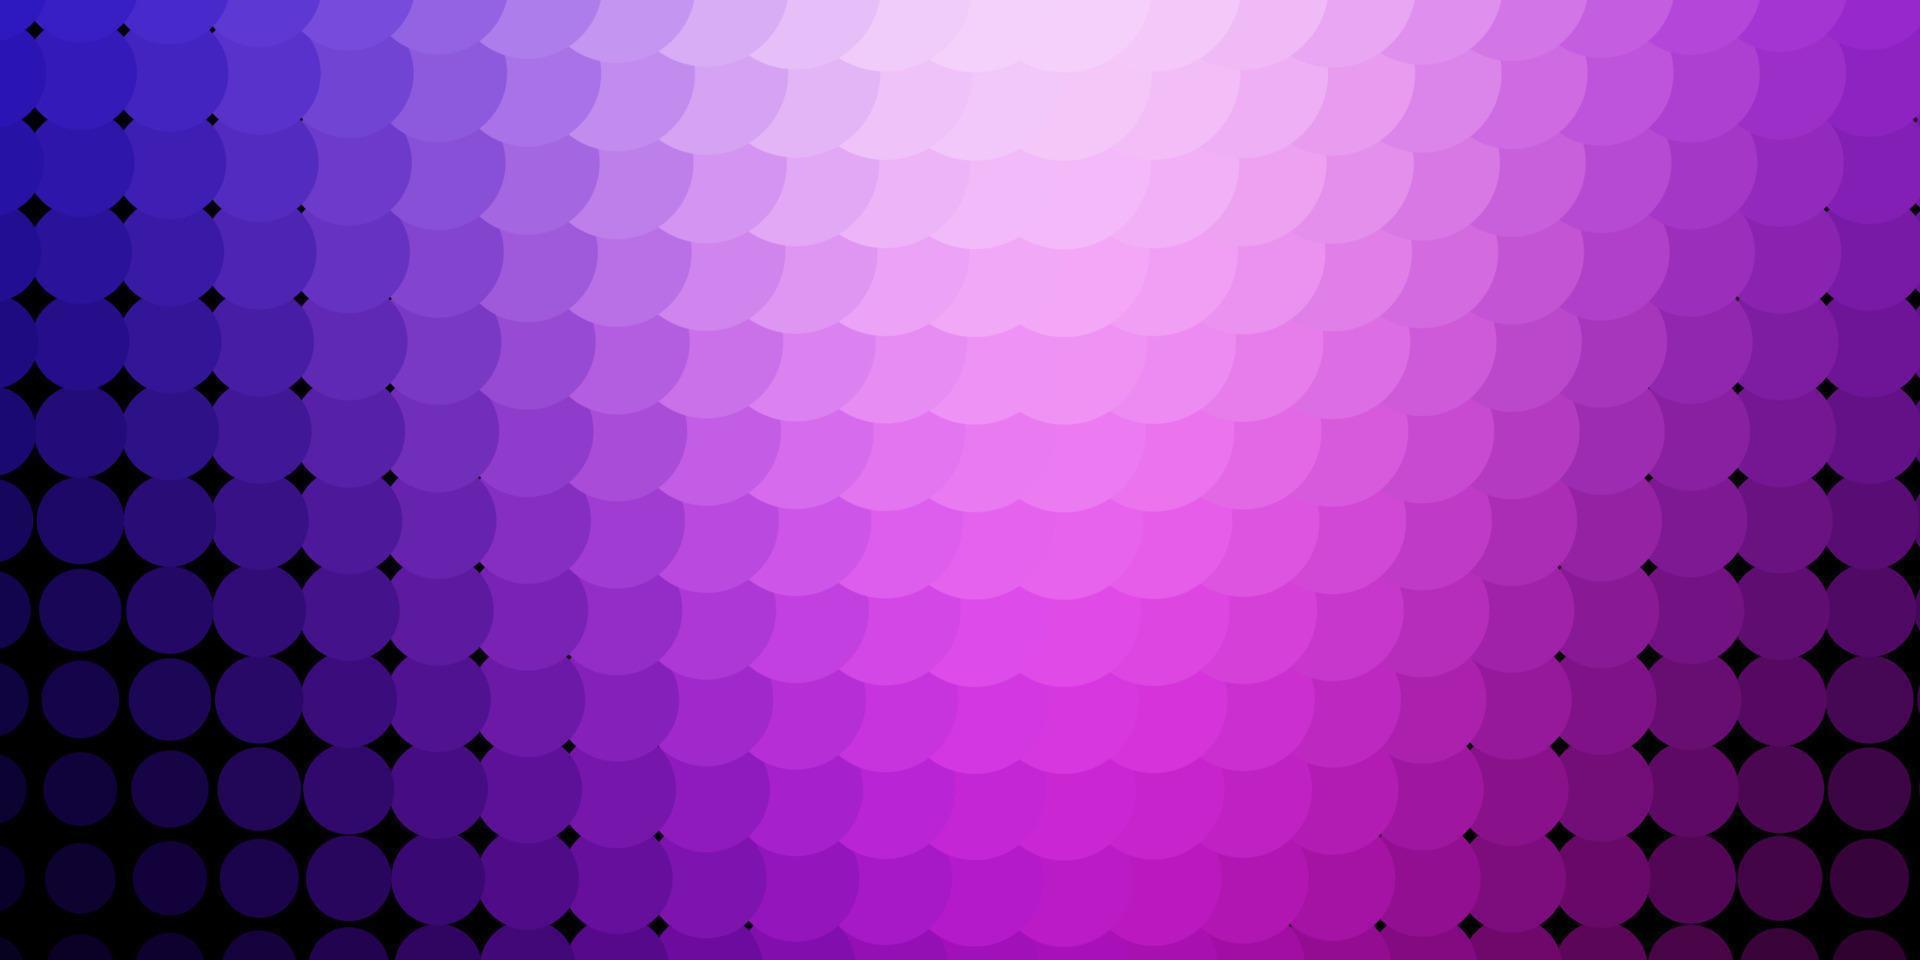 lichtpaars, roze vector sjabloon met cirkels.